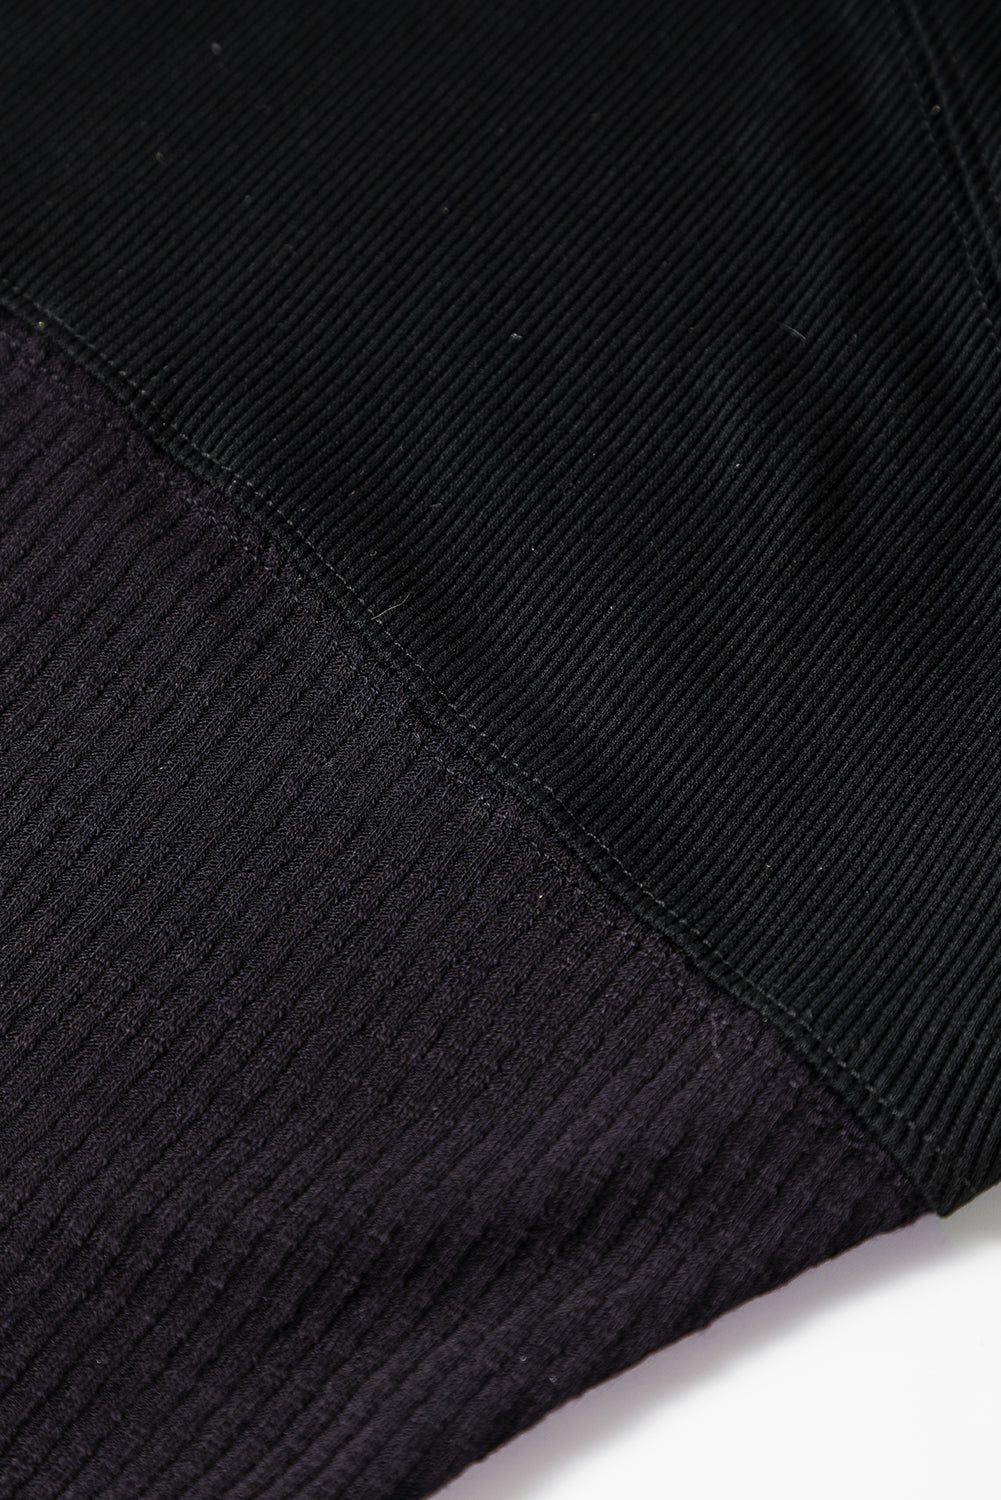 Haut noir à manches longues en tricot côtelé avec boutons-pression